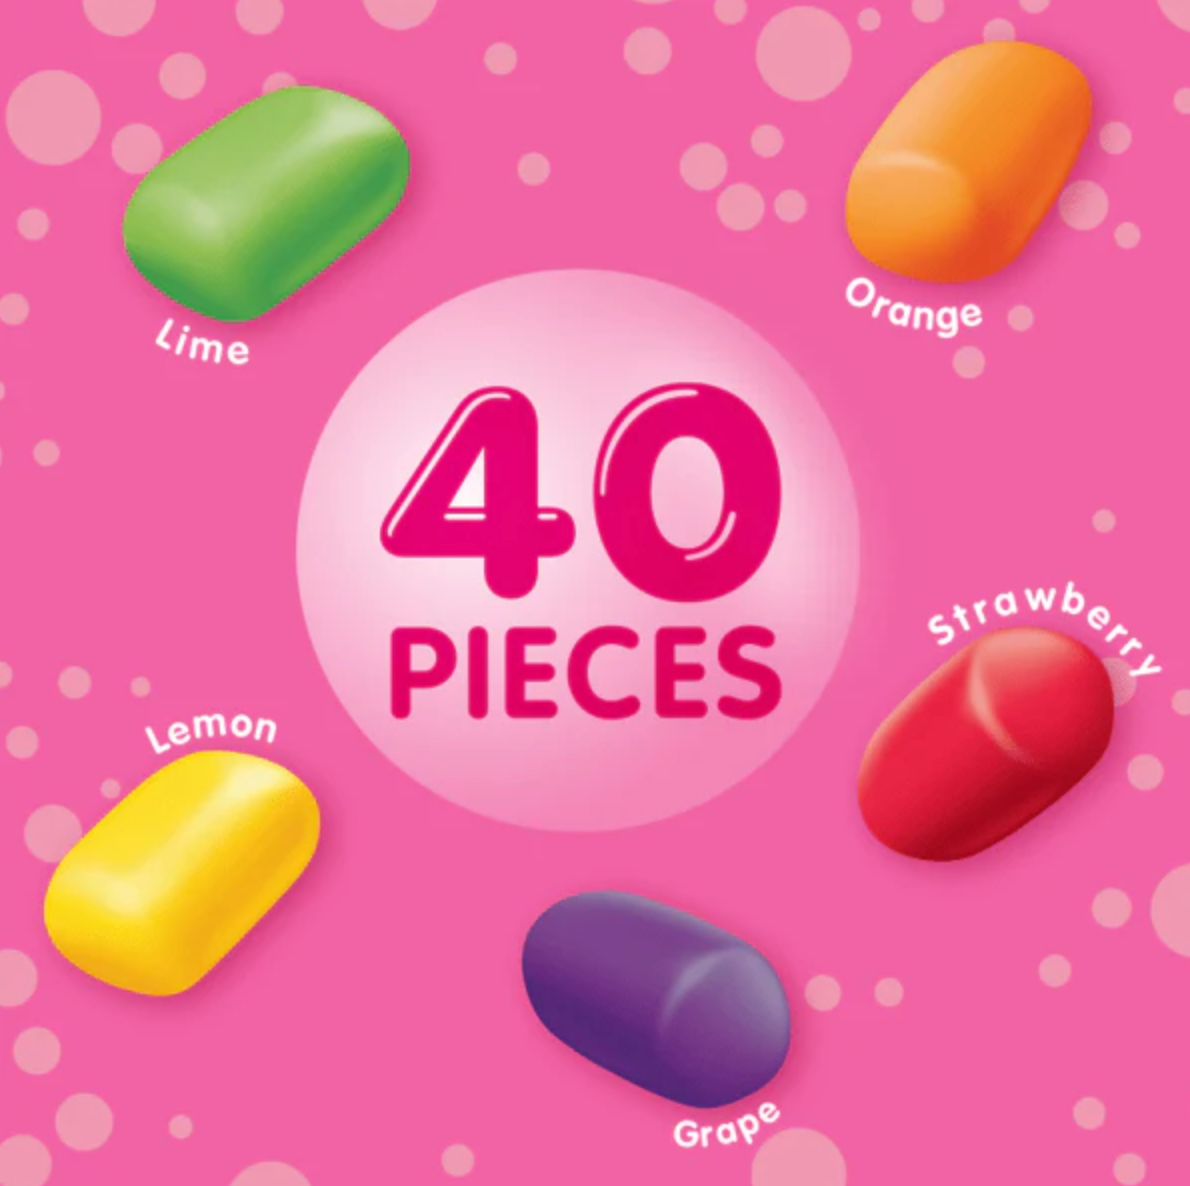 Hubba Bubba Mini Gum, Rainbow Skittles